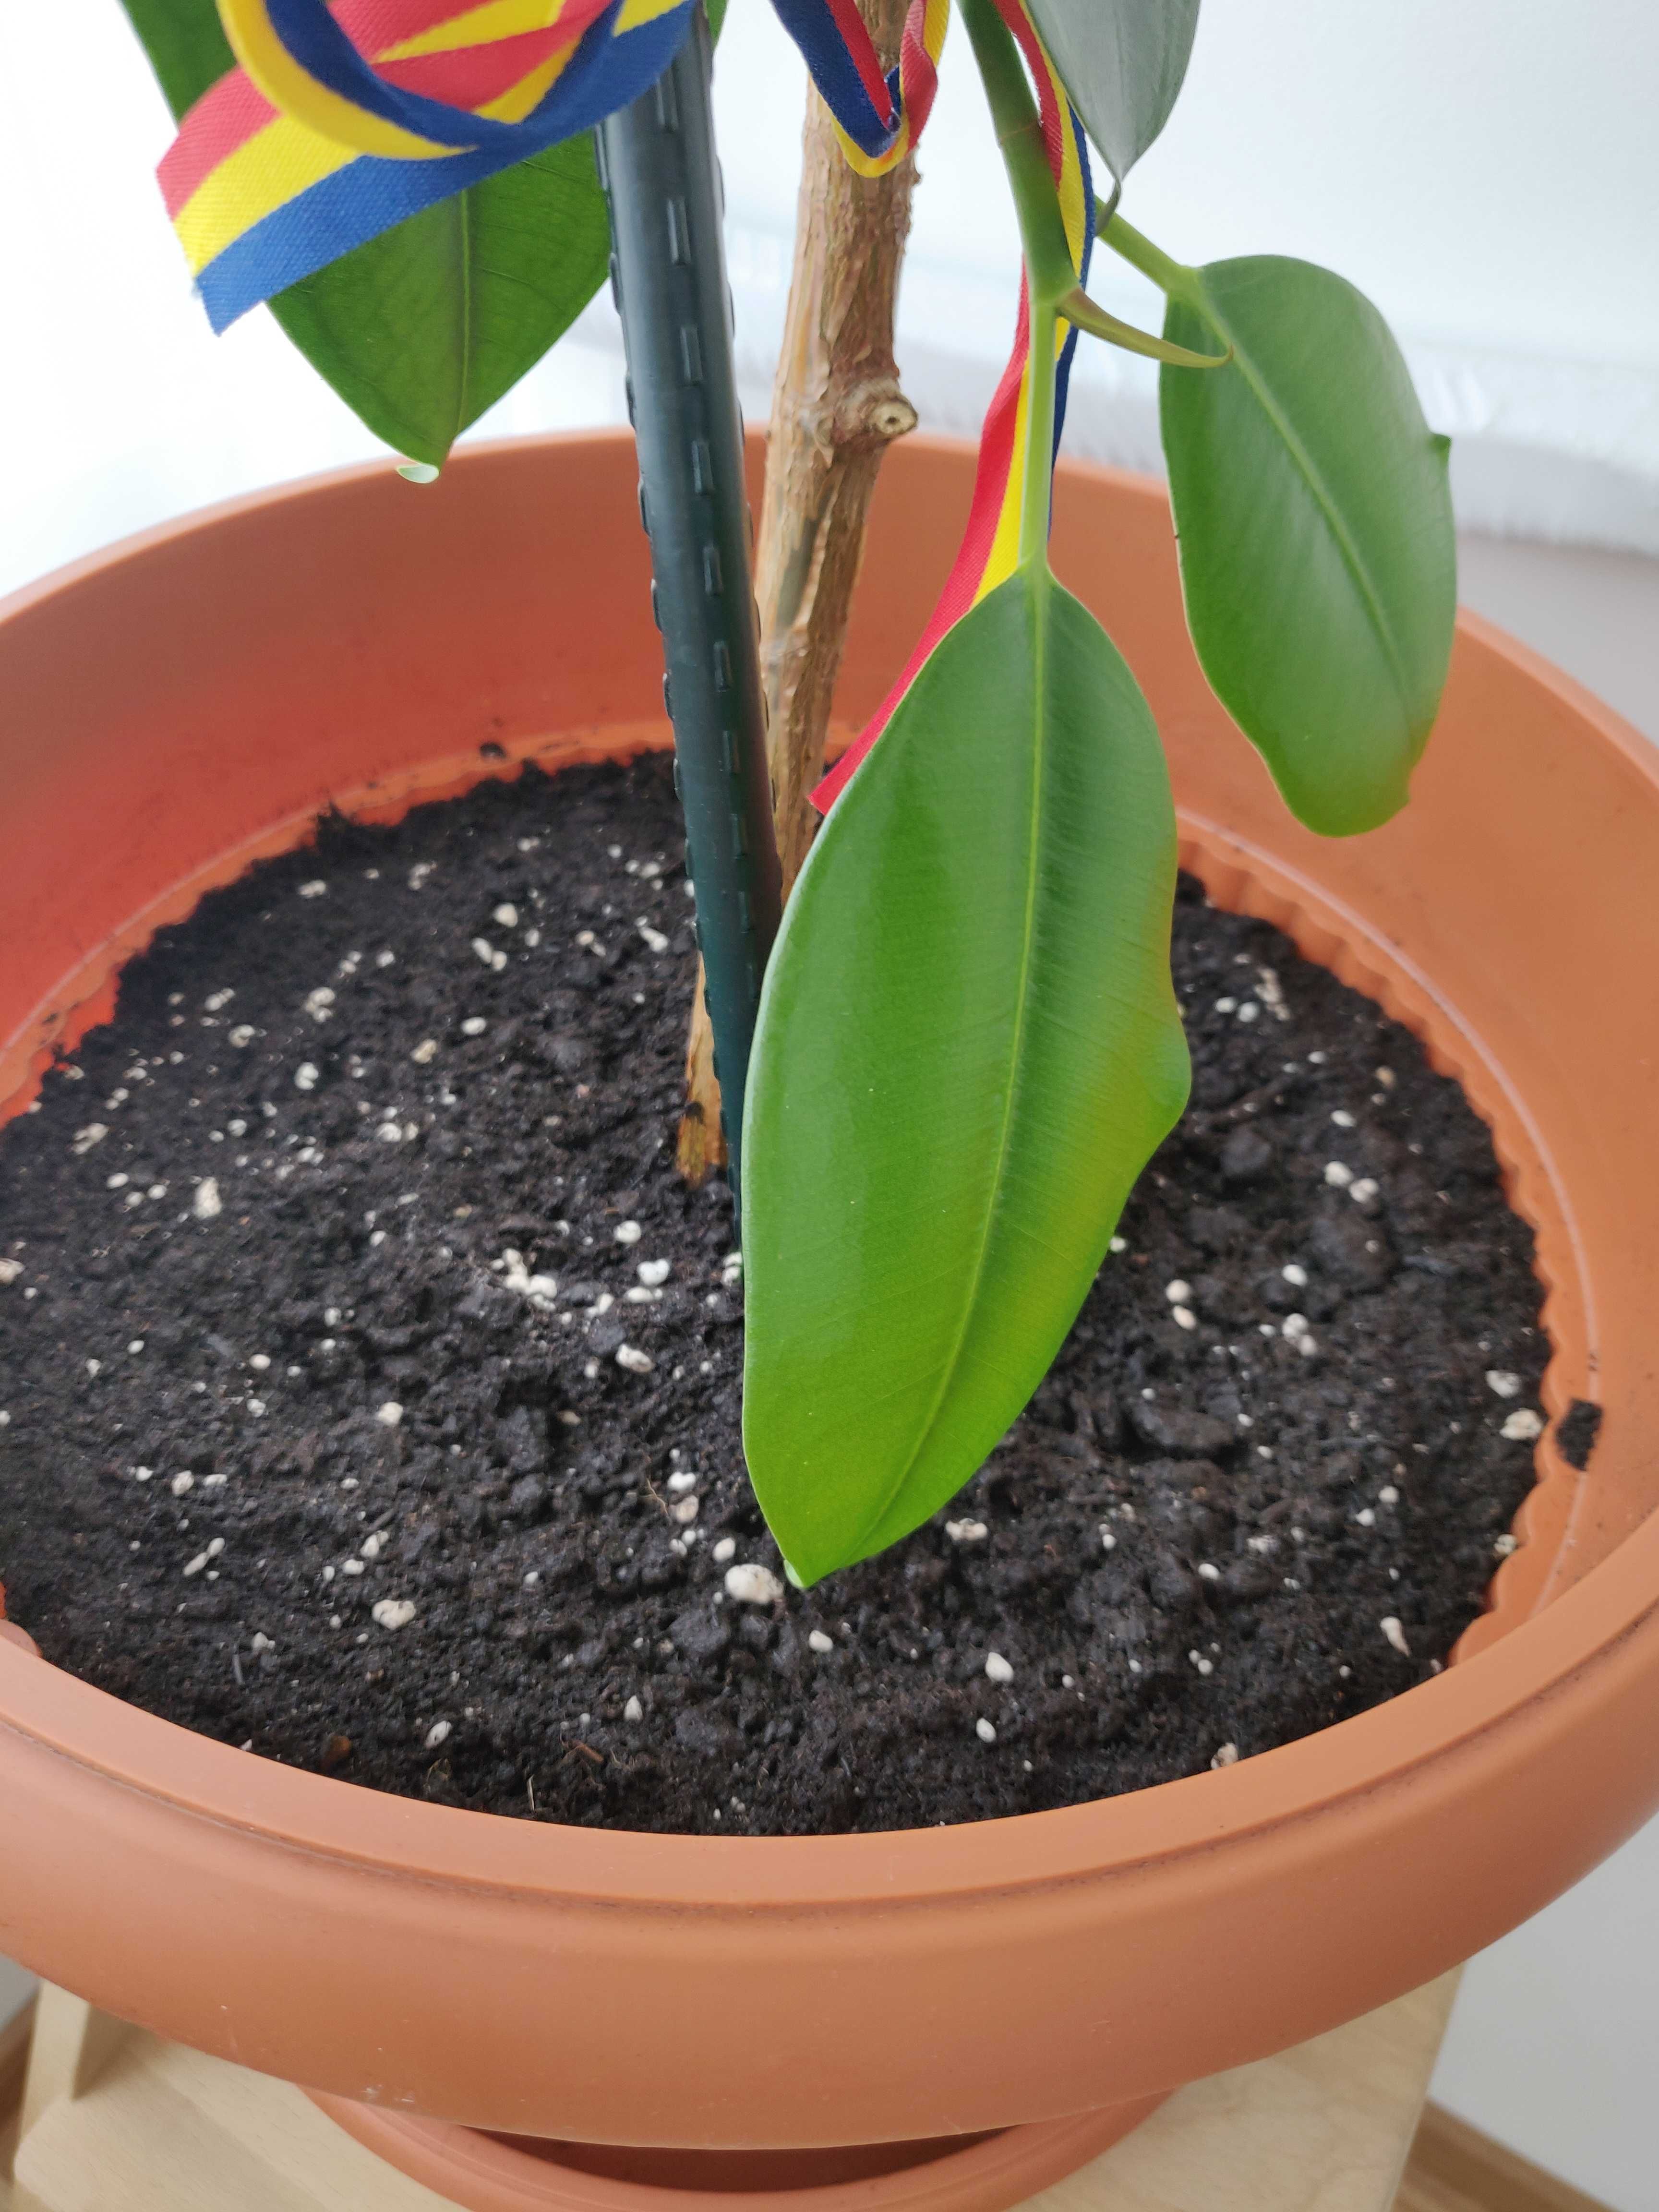 Ficus- Planta de apartament